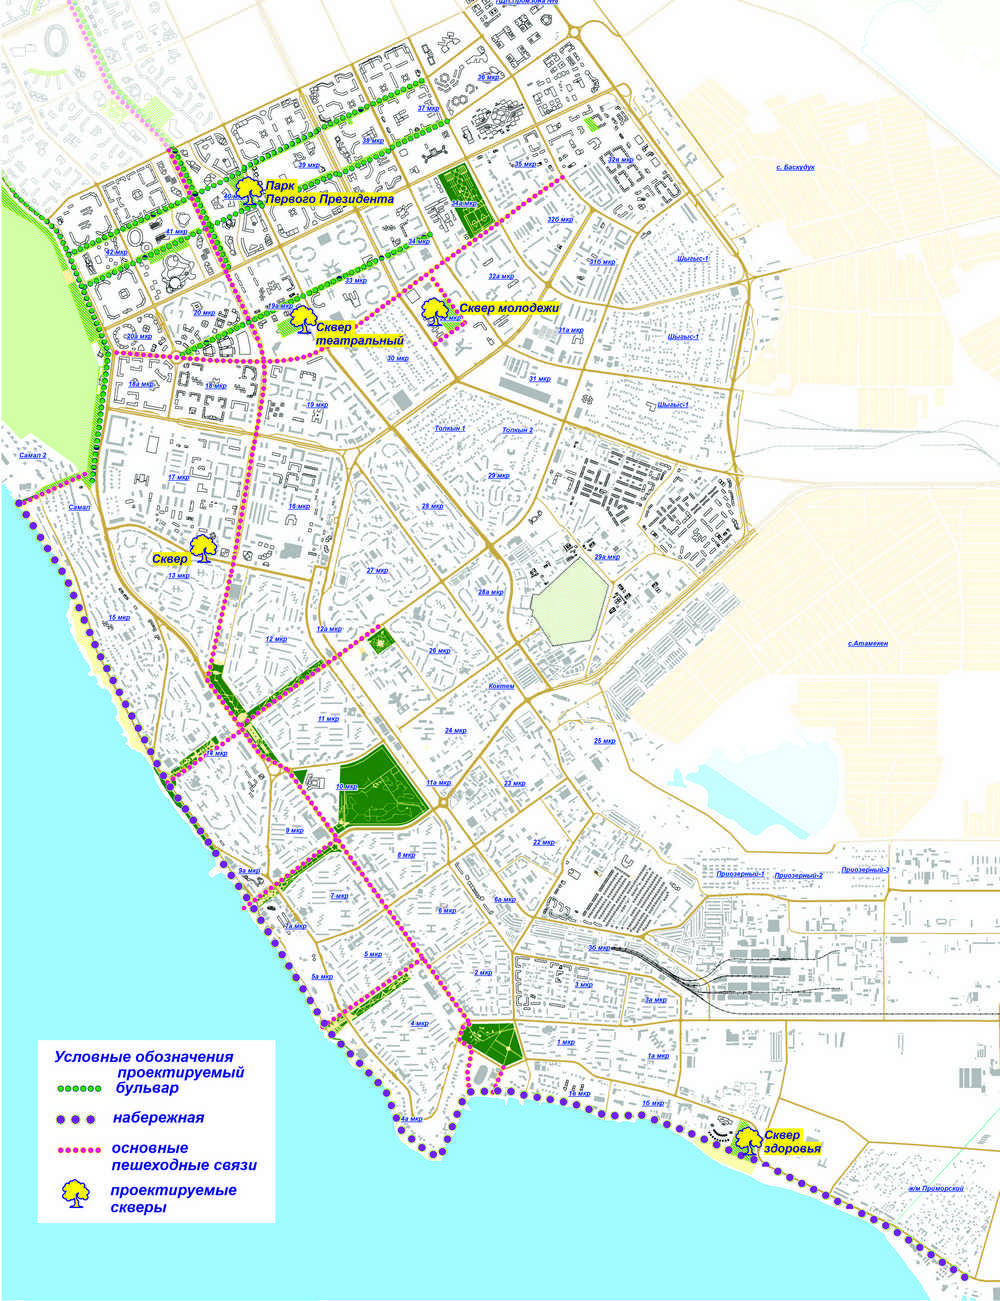 Генеральные планы: Власти прокомментировали застройку набережной Актау бизнес-центрами и жилыми зданиями